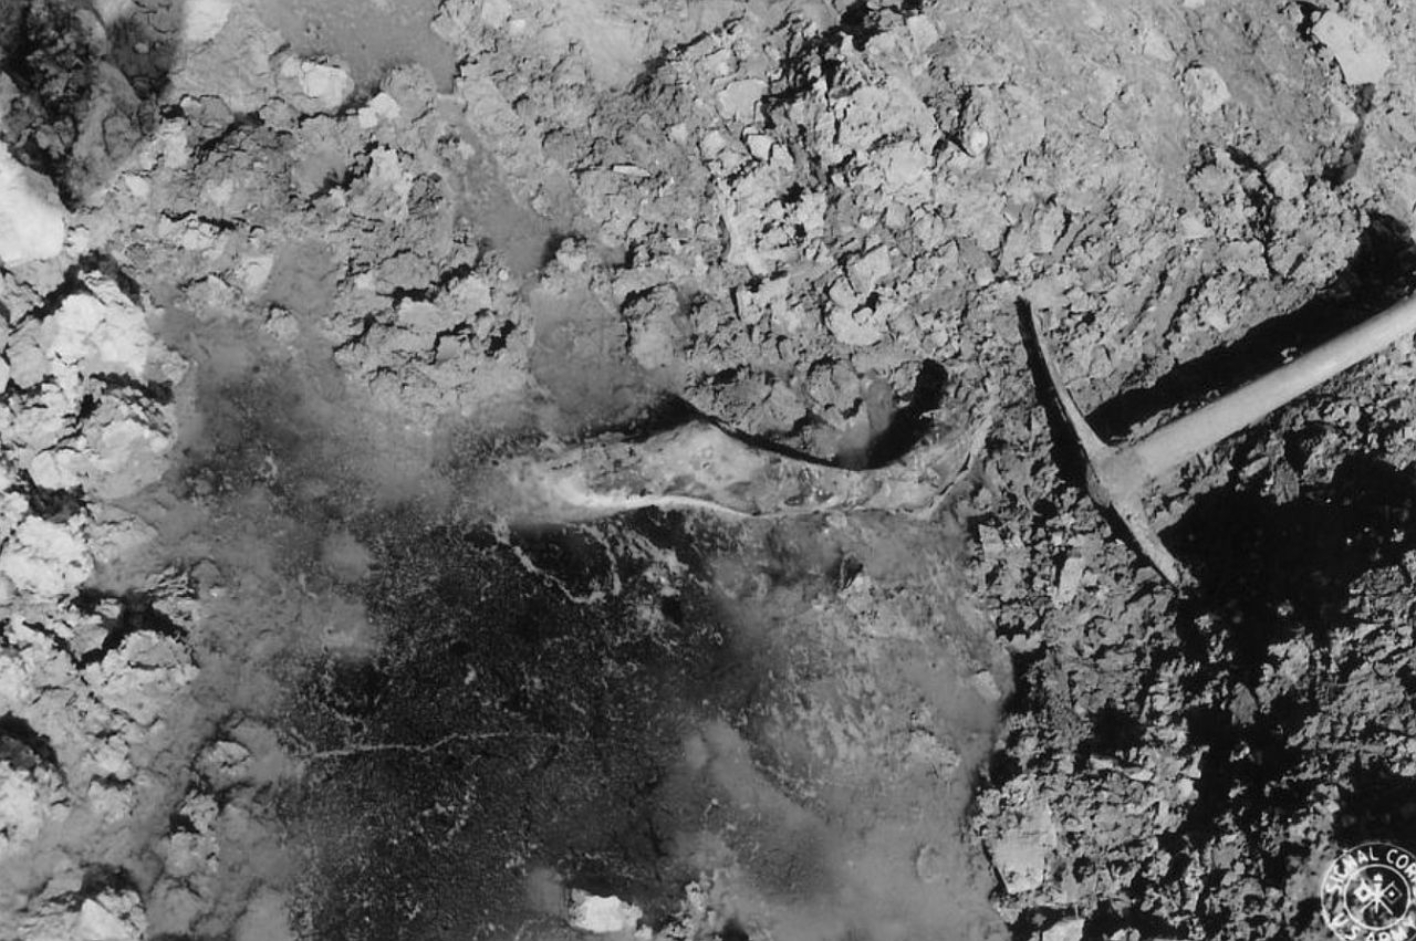 Blick in eines der Massengräber des Buchenwalder Außenlagers Ohrdruf. Aus einem schlammigen Loch ragt ein Bein heraus.